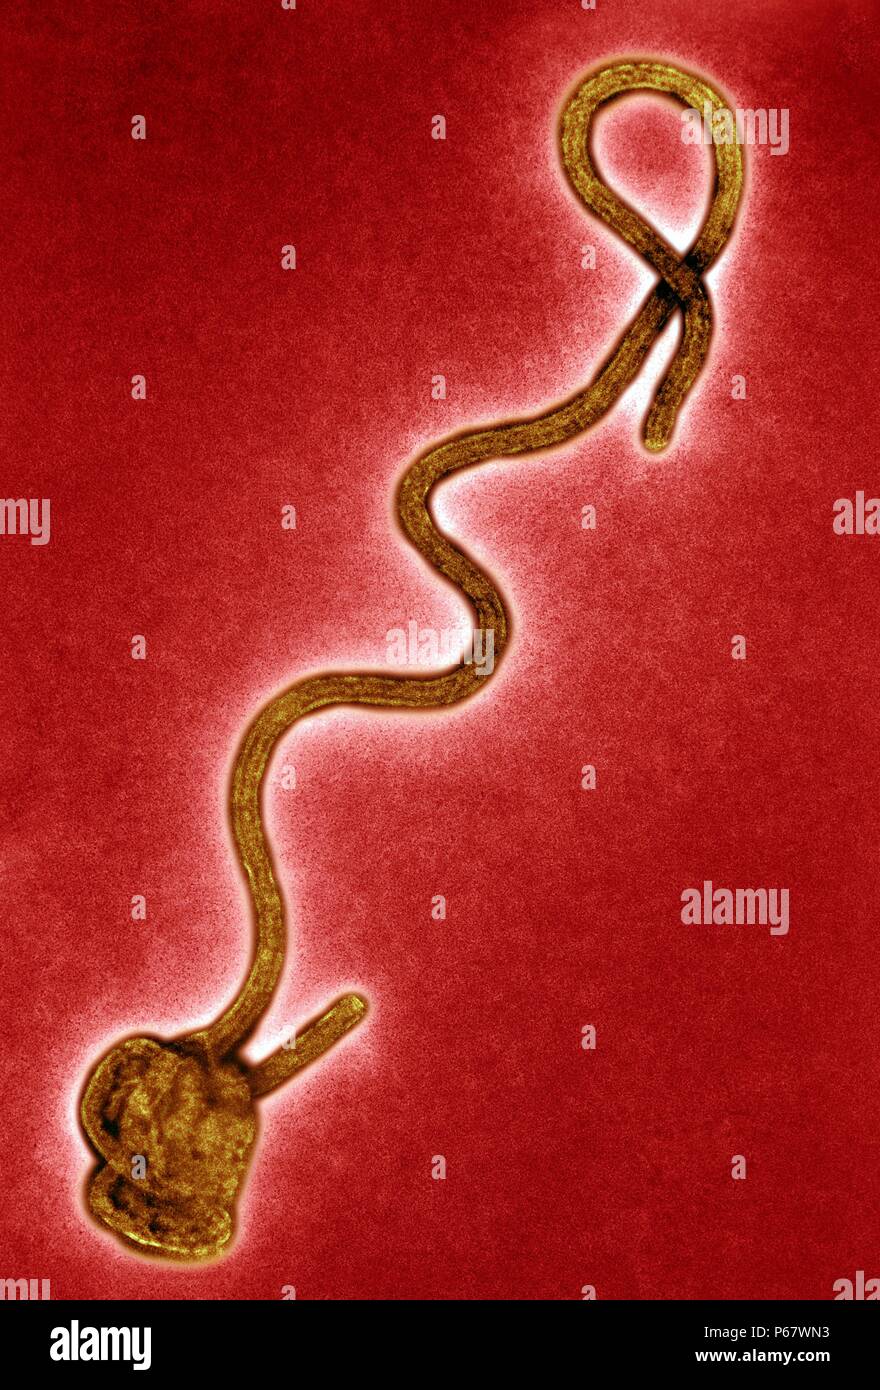 Micrografía de electrones de la transmisión de la fiebre hemorrágica Ébola virus ARN Foto de stock